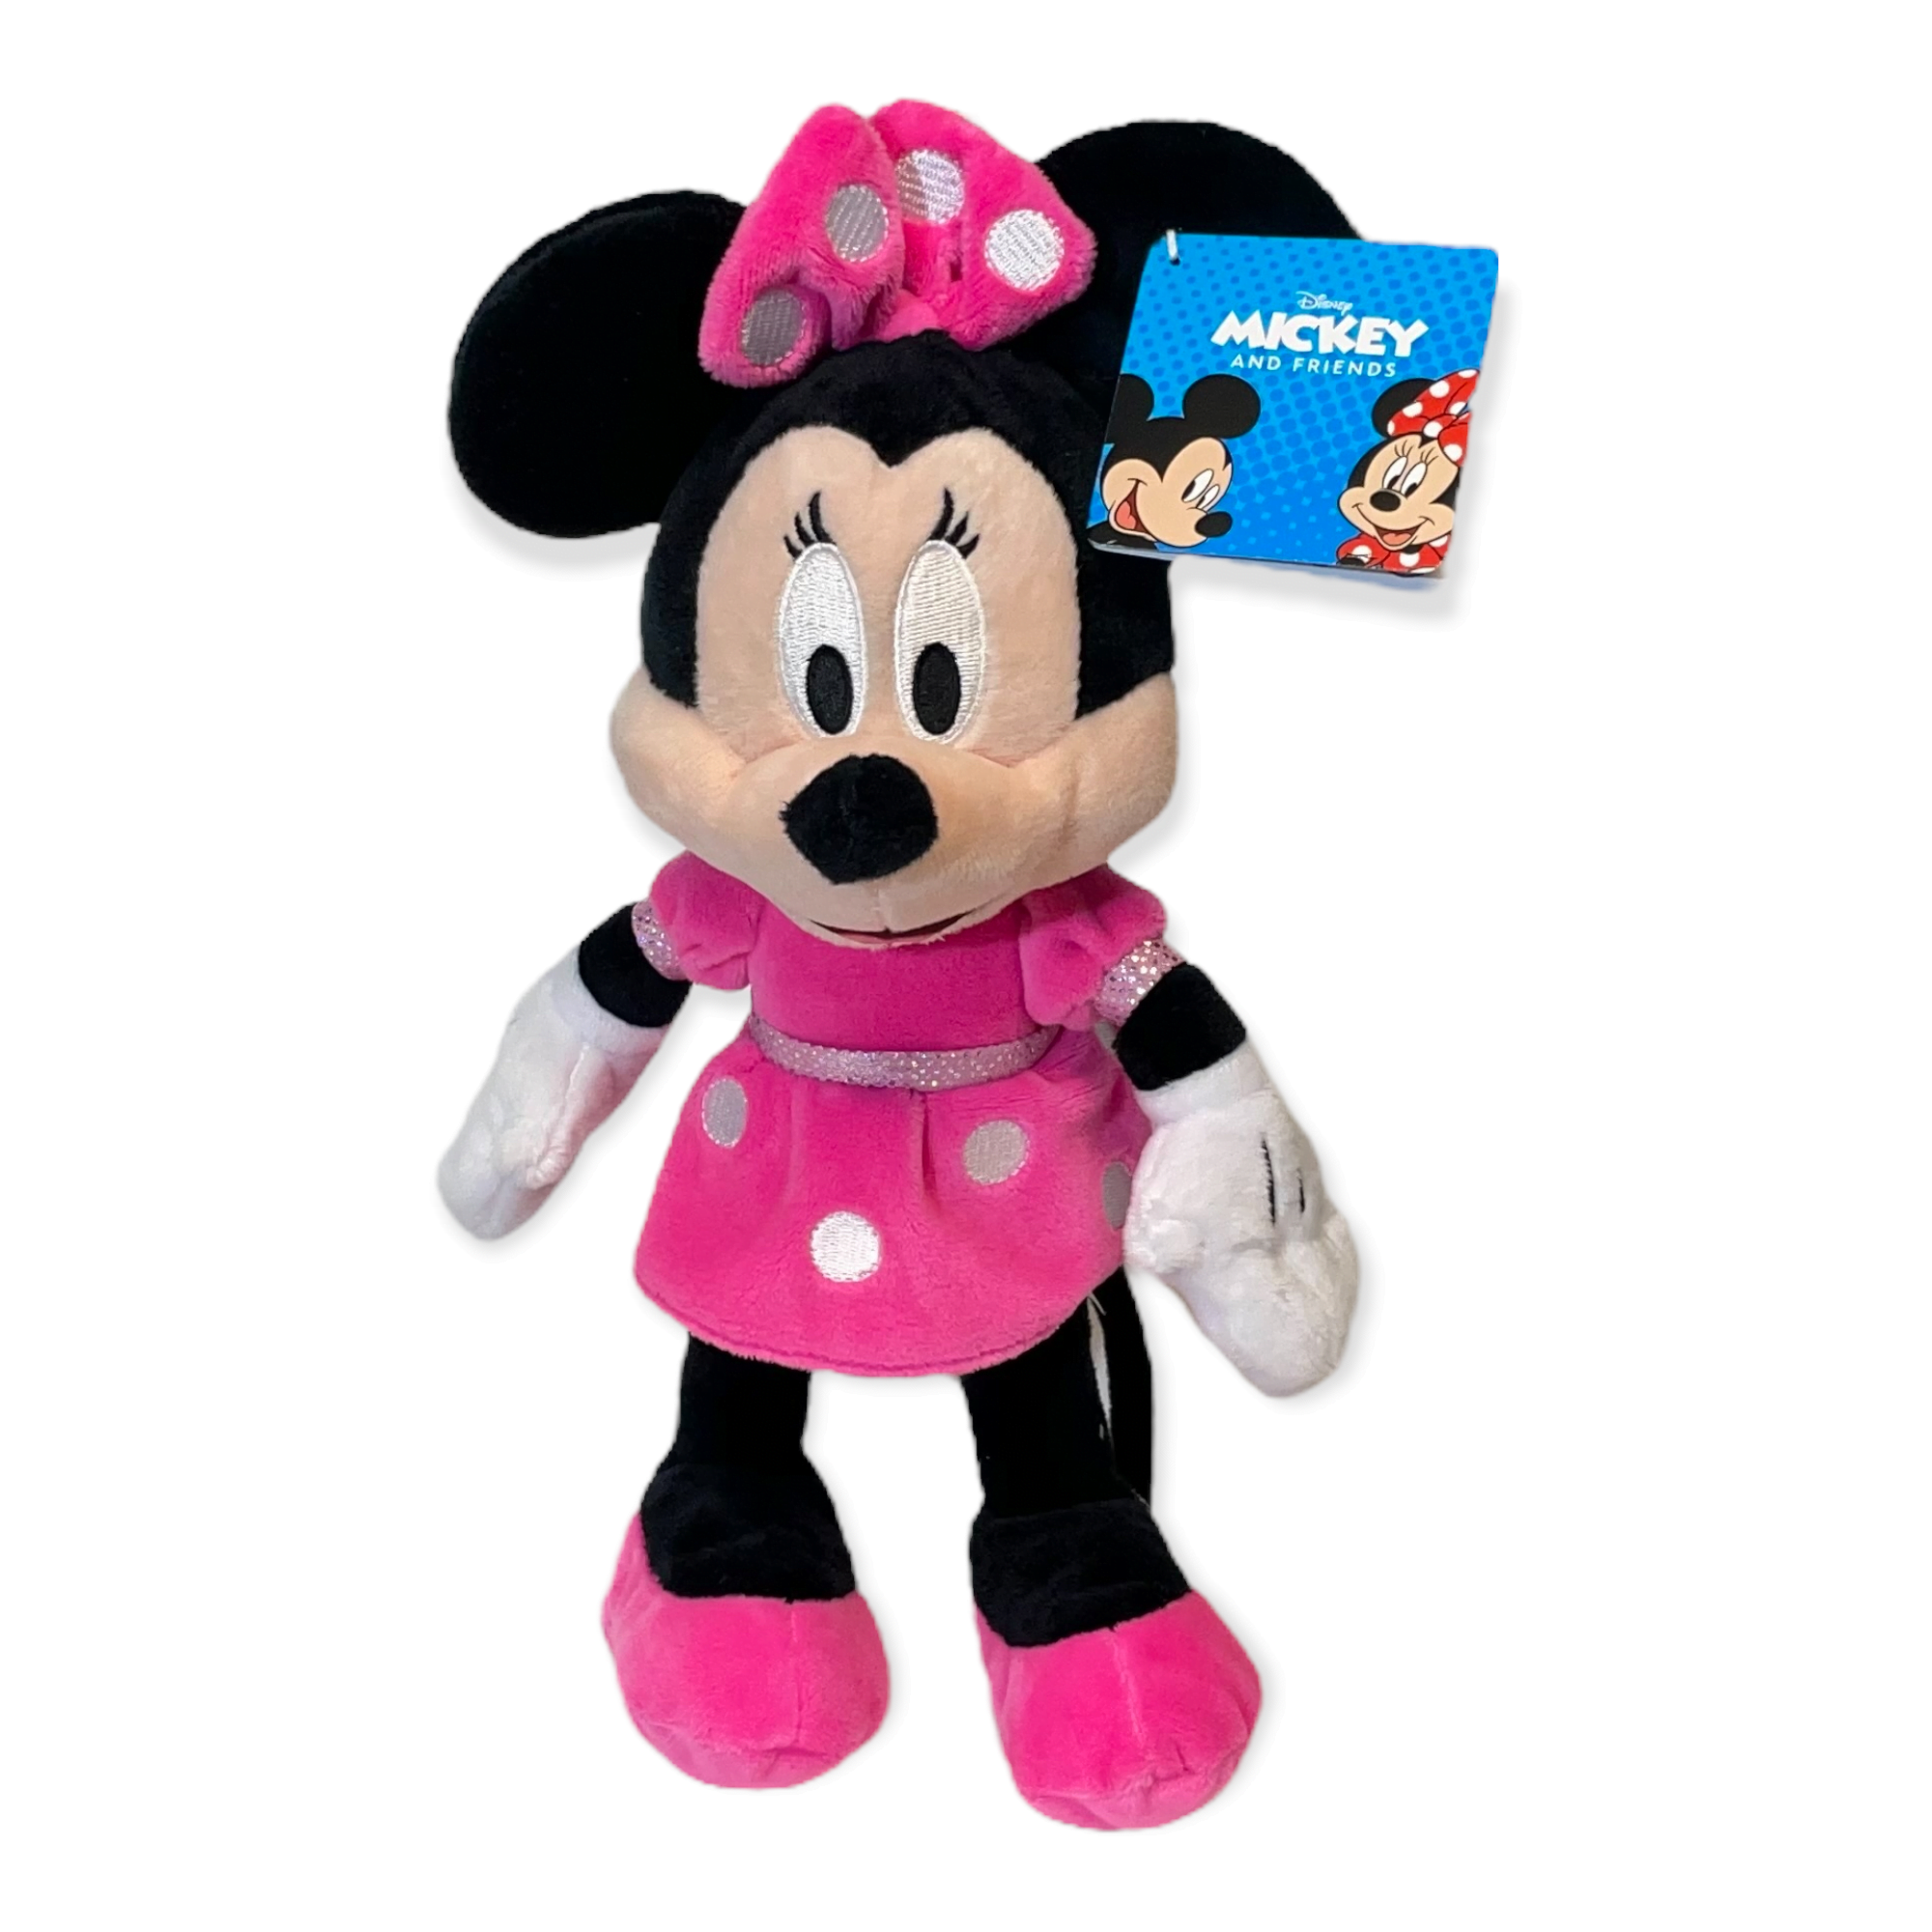 Billede af Minnie Mouse Disney 25 cm hos Plysdyr.dk